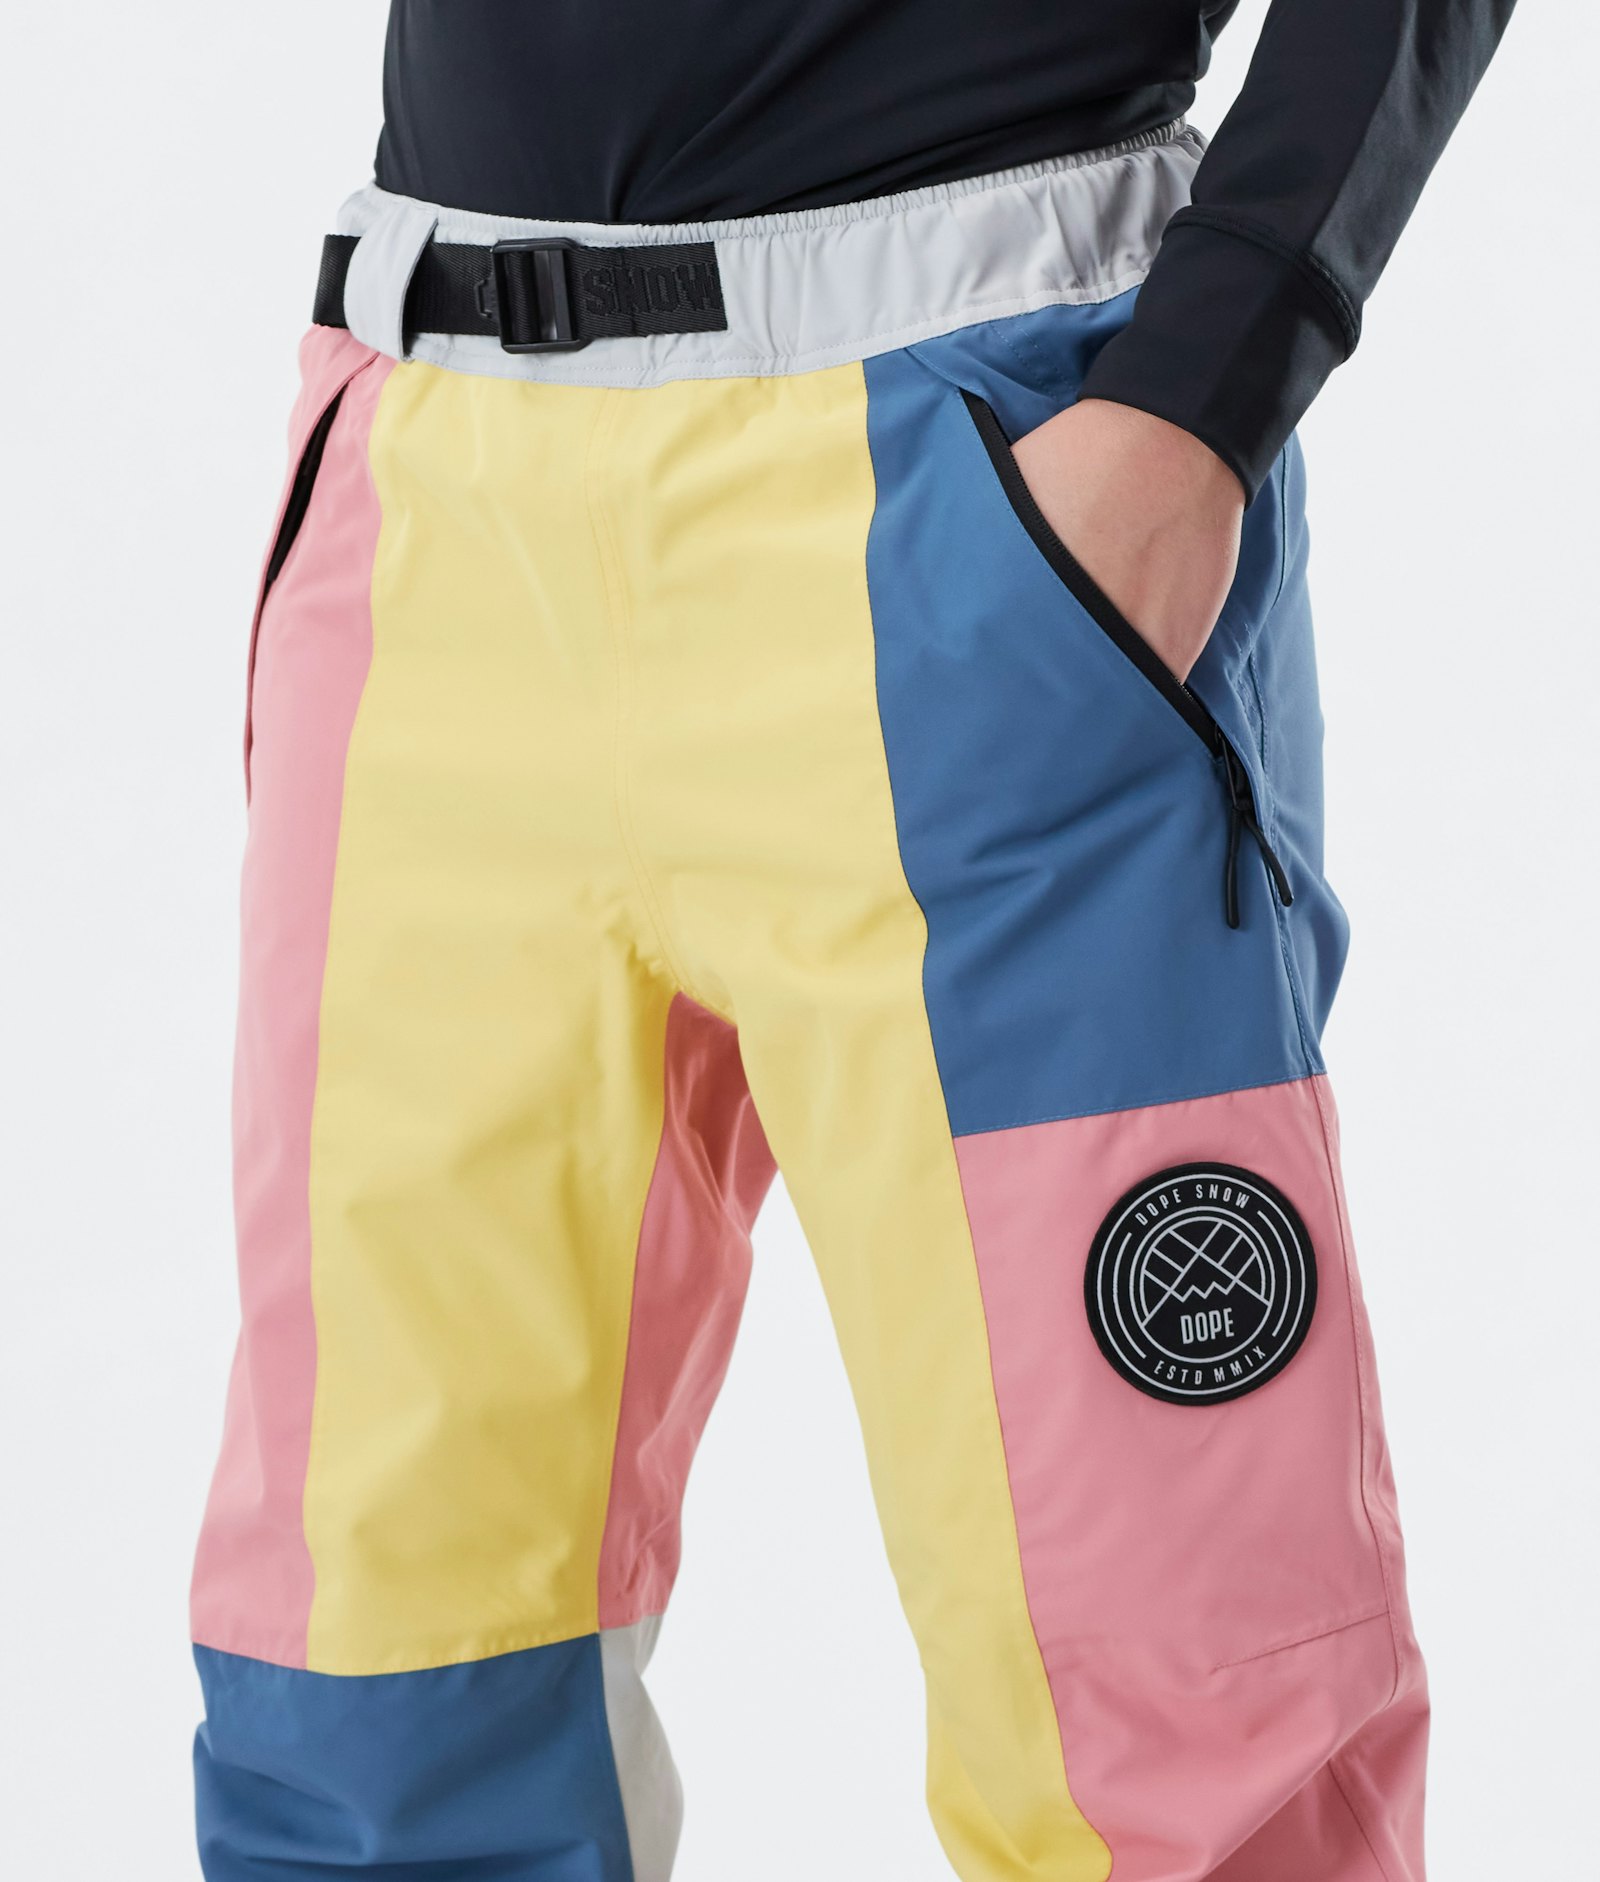 Dope Blizzard W 2020 Lyžařské Kalhoty Dámské Limited Edition Pink Patchwork